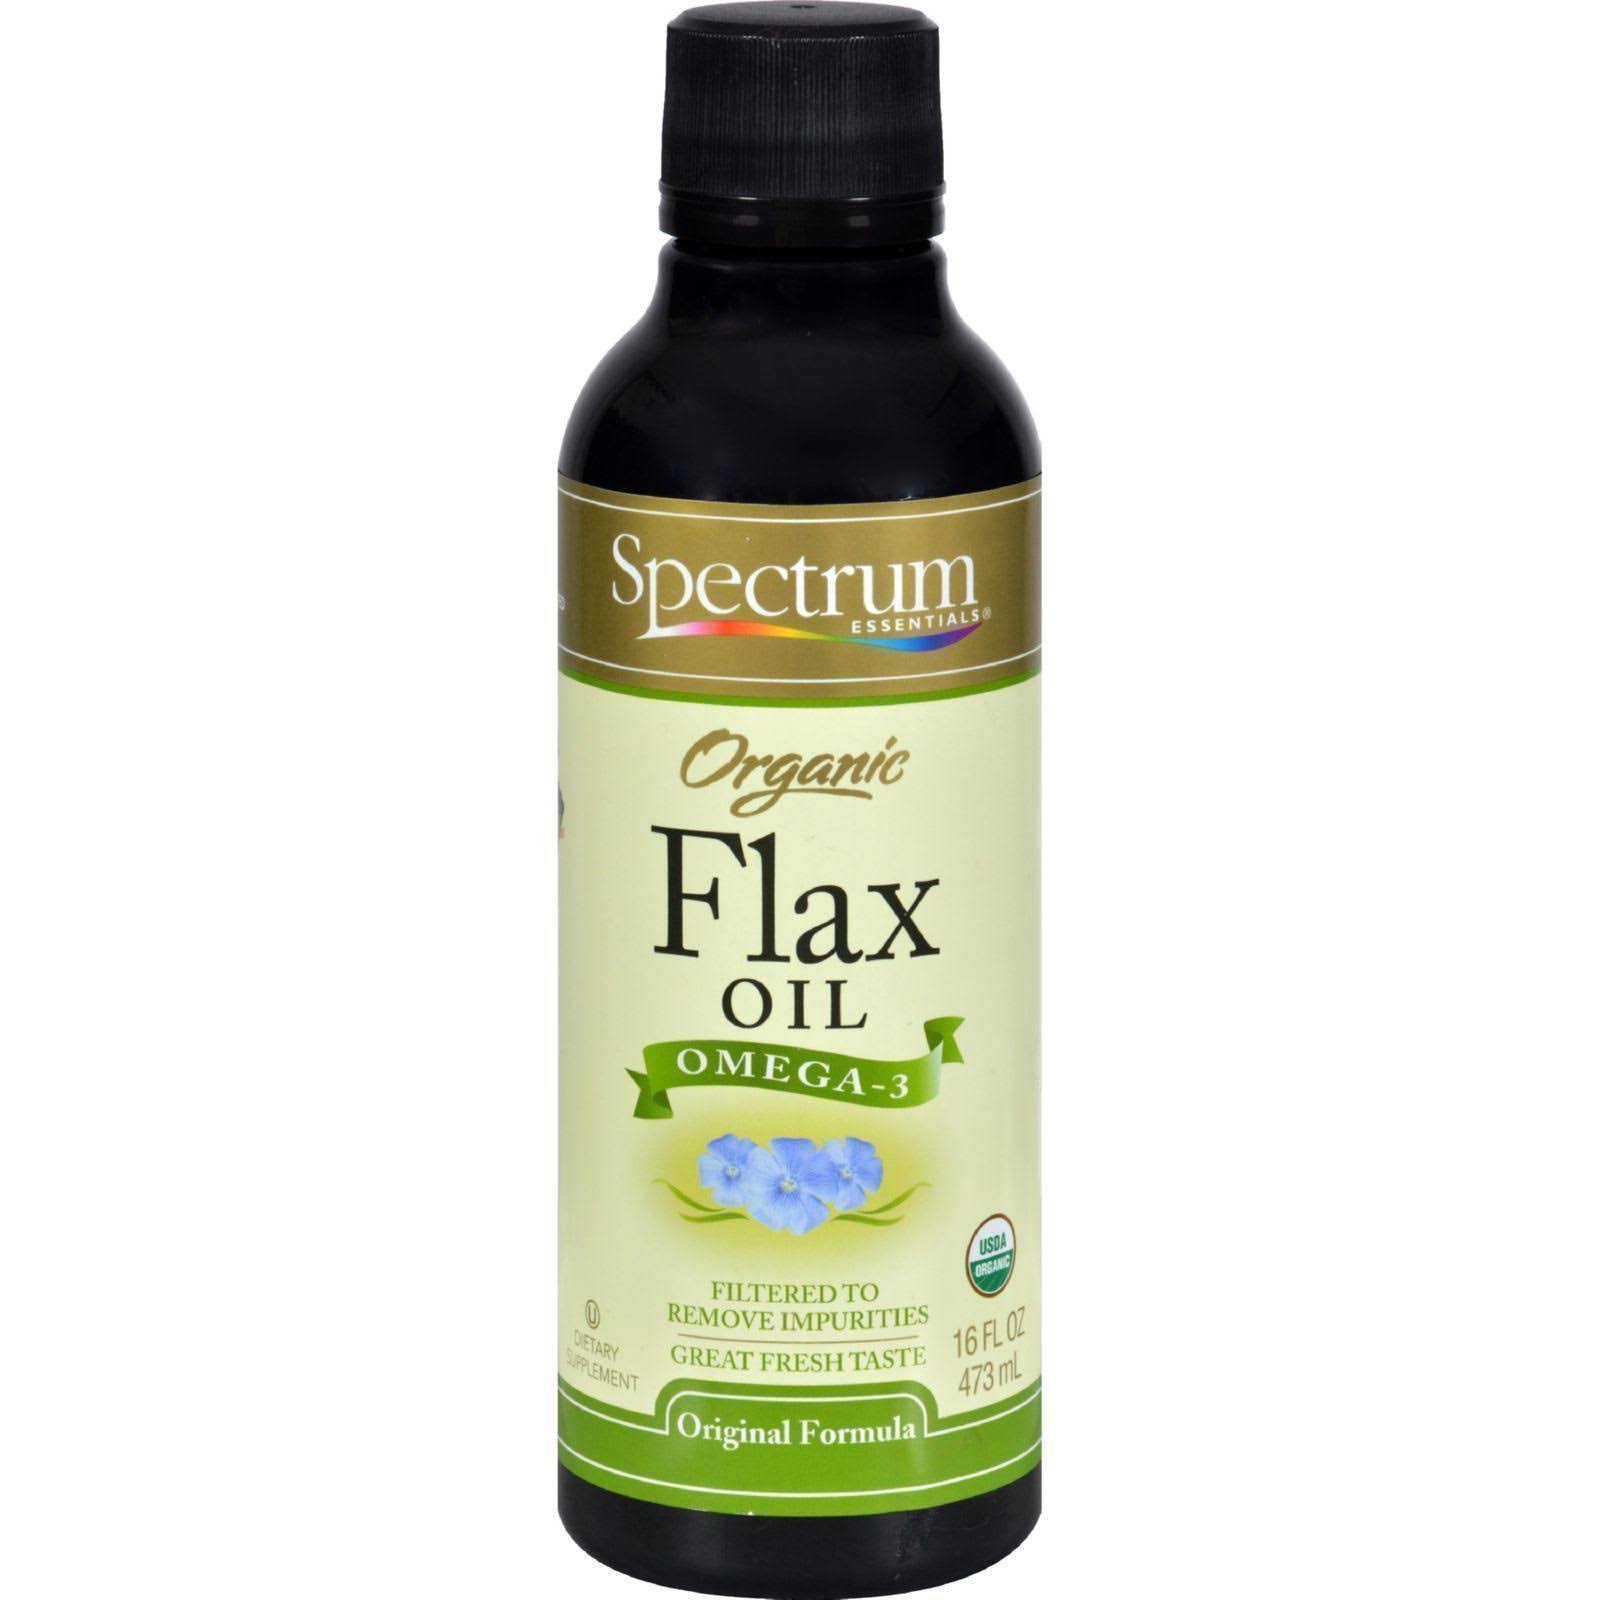 Spectrum Essential Organic Flax Oil - Original Formula, 16oz